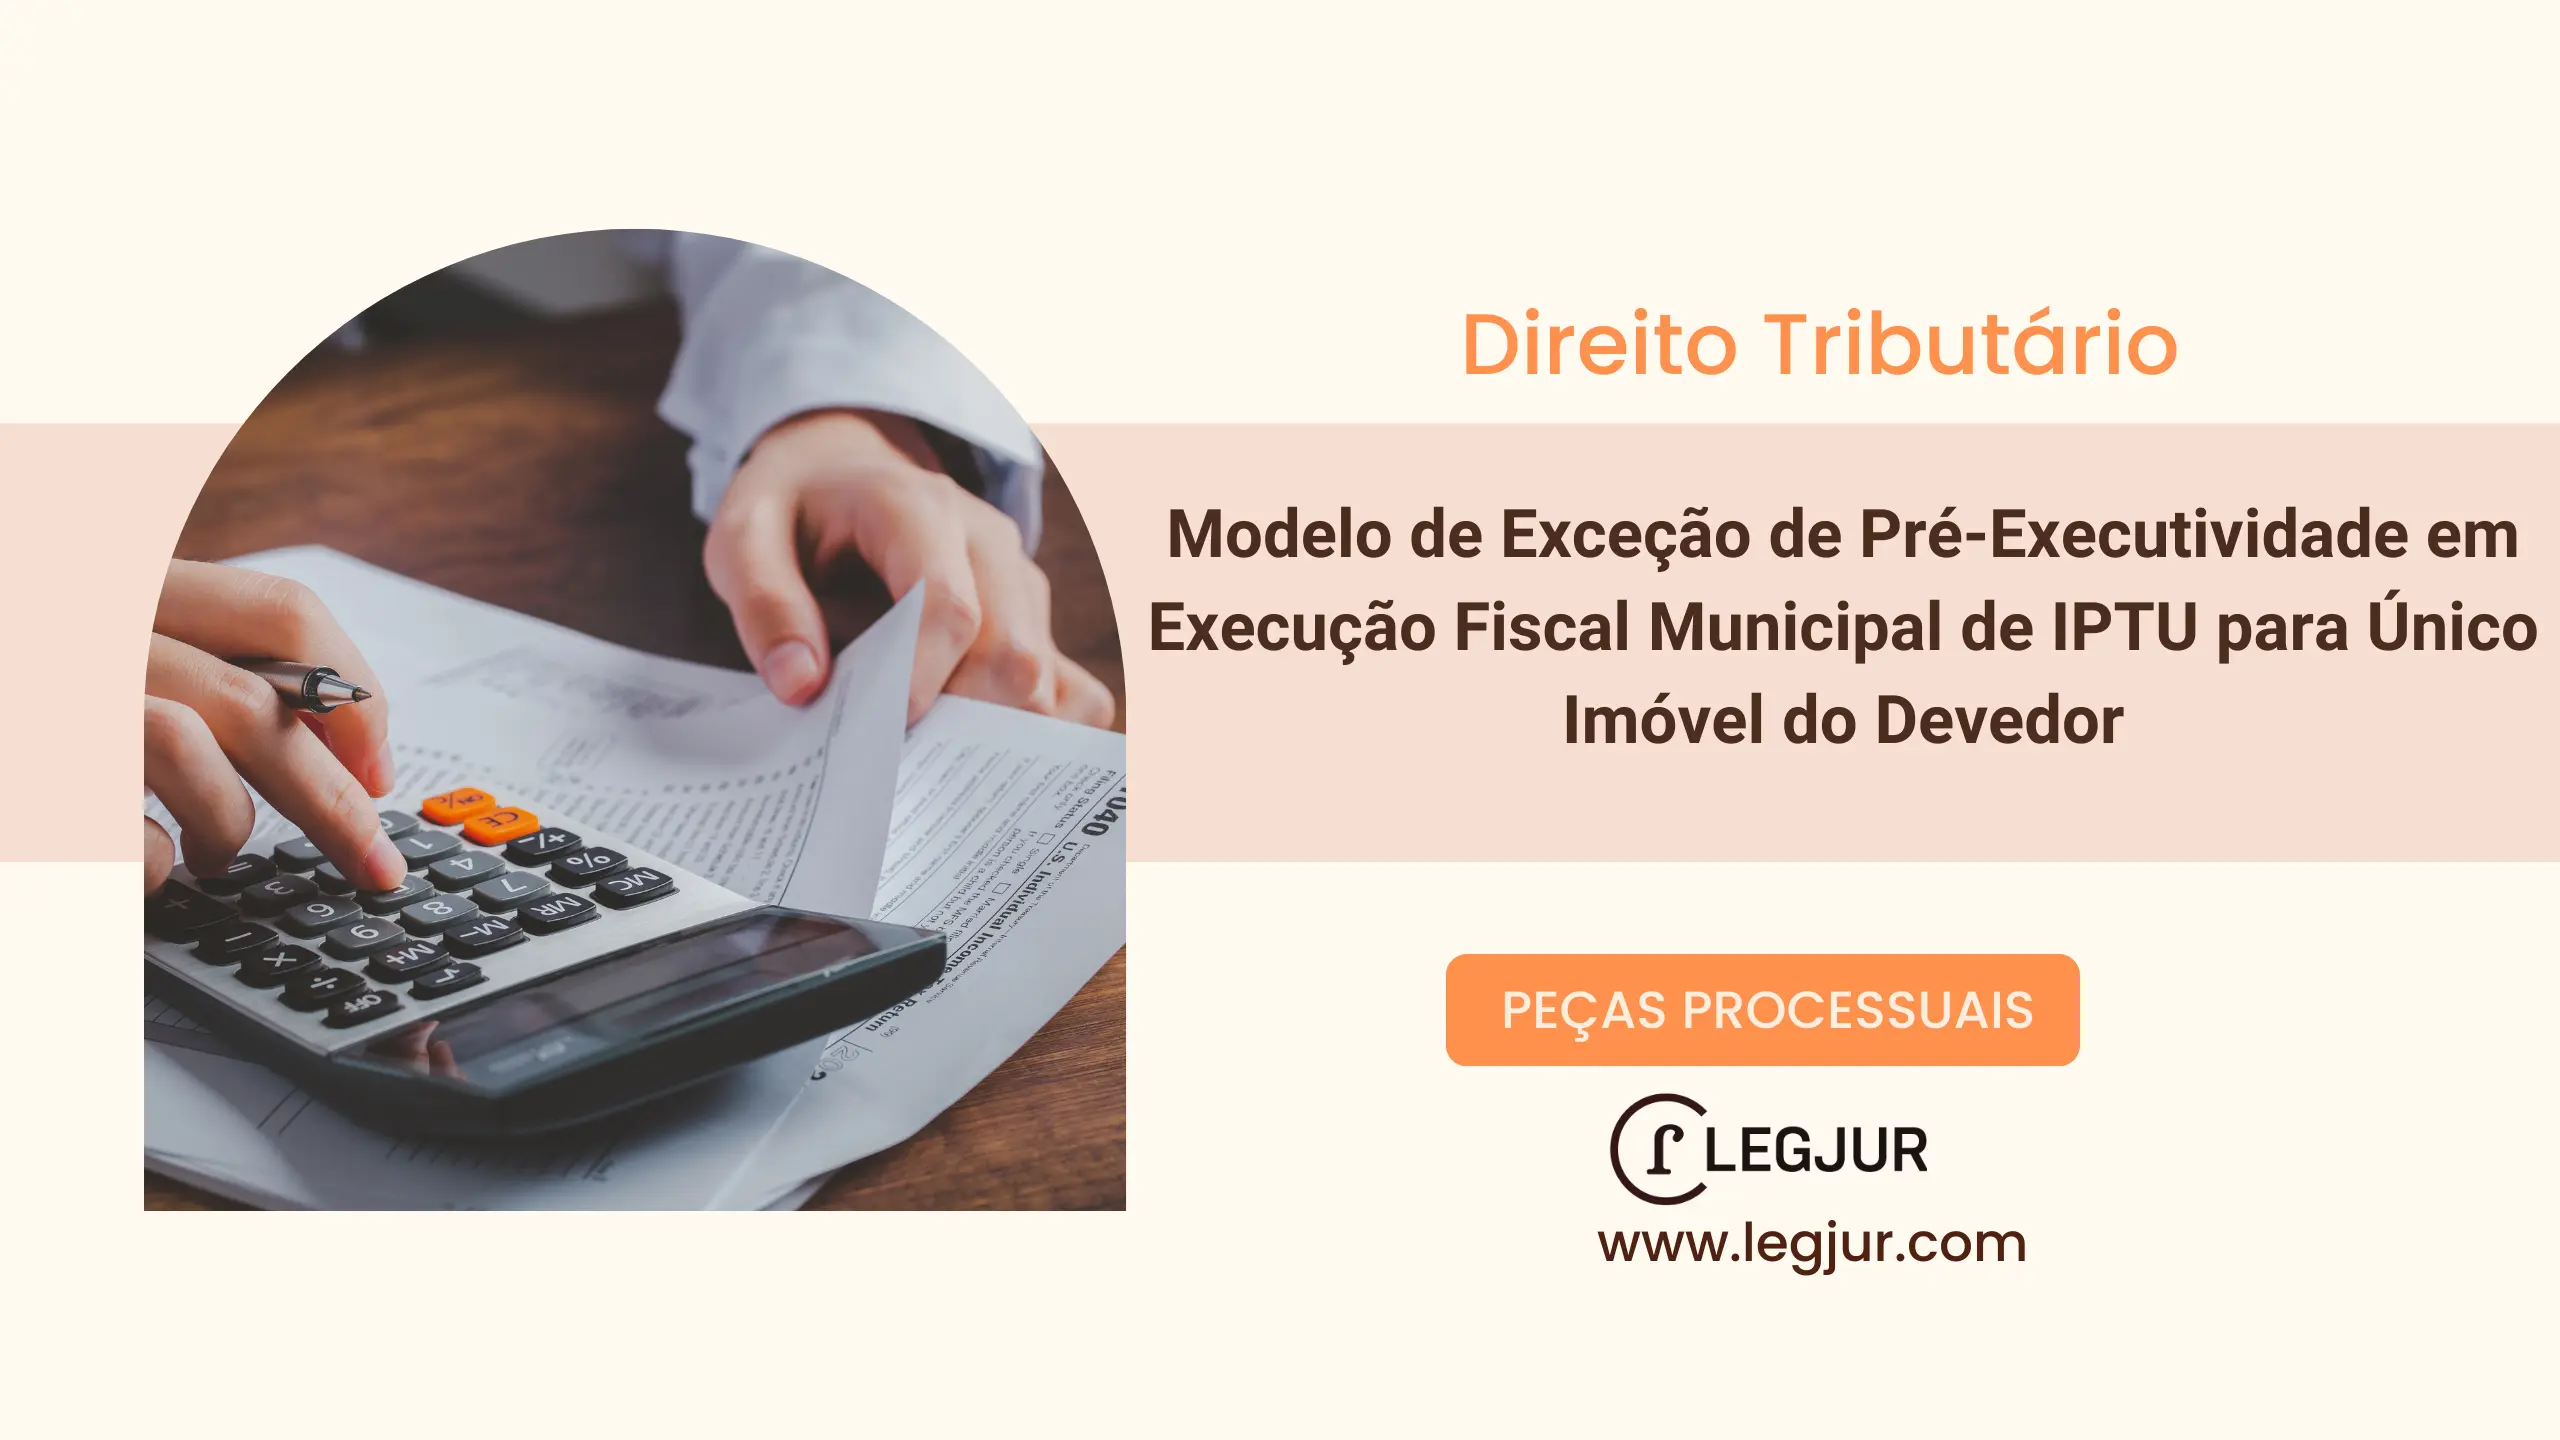 Modelo de Exceção de Pré-Executividade em Execução Fiscal Municipal de IPTU para Único Imóvel do Devedor